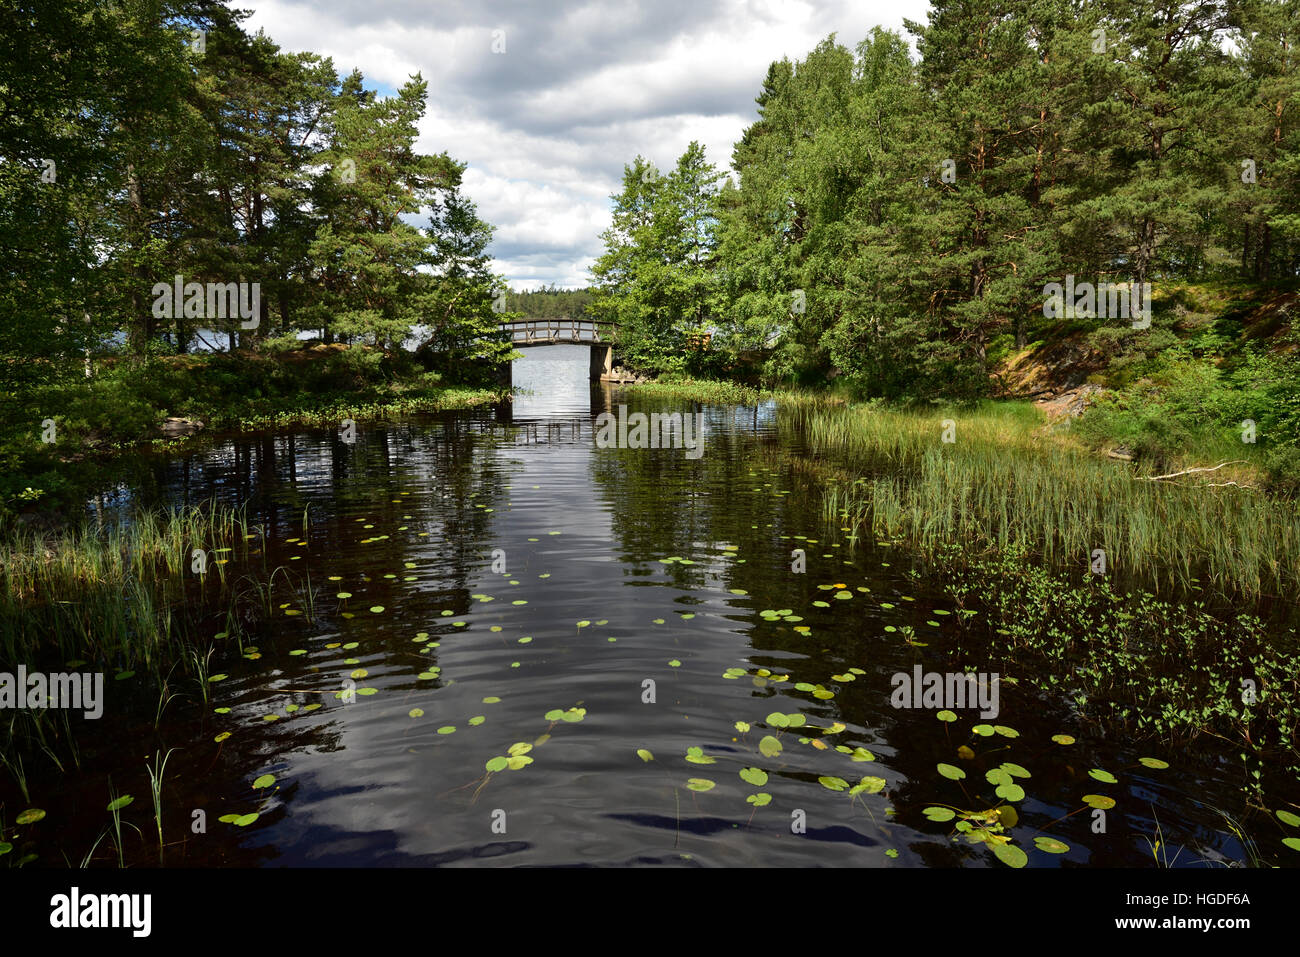 Channel, bridge, Väster Gotland, Sweden Stock Photo